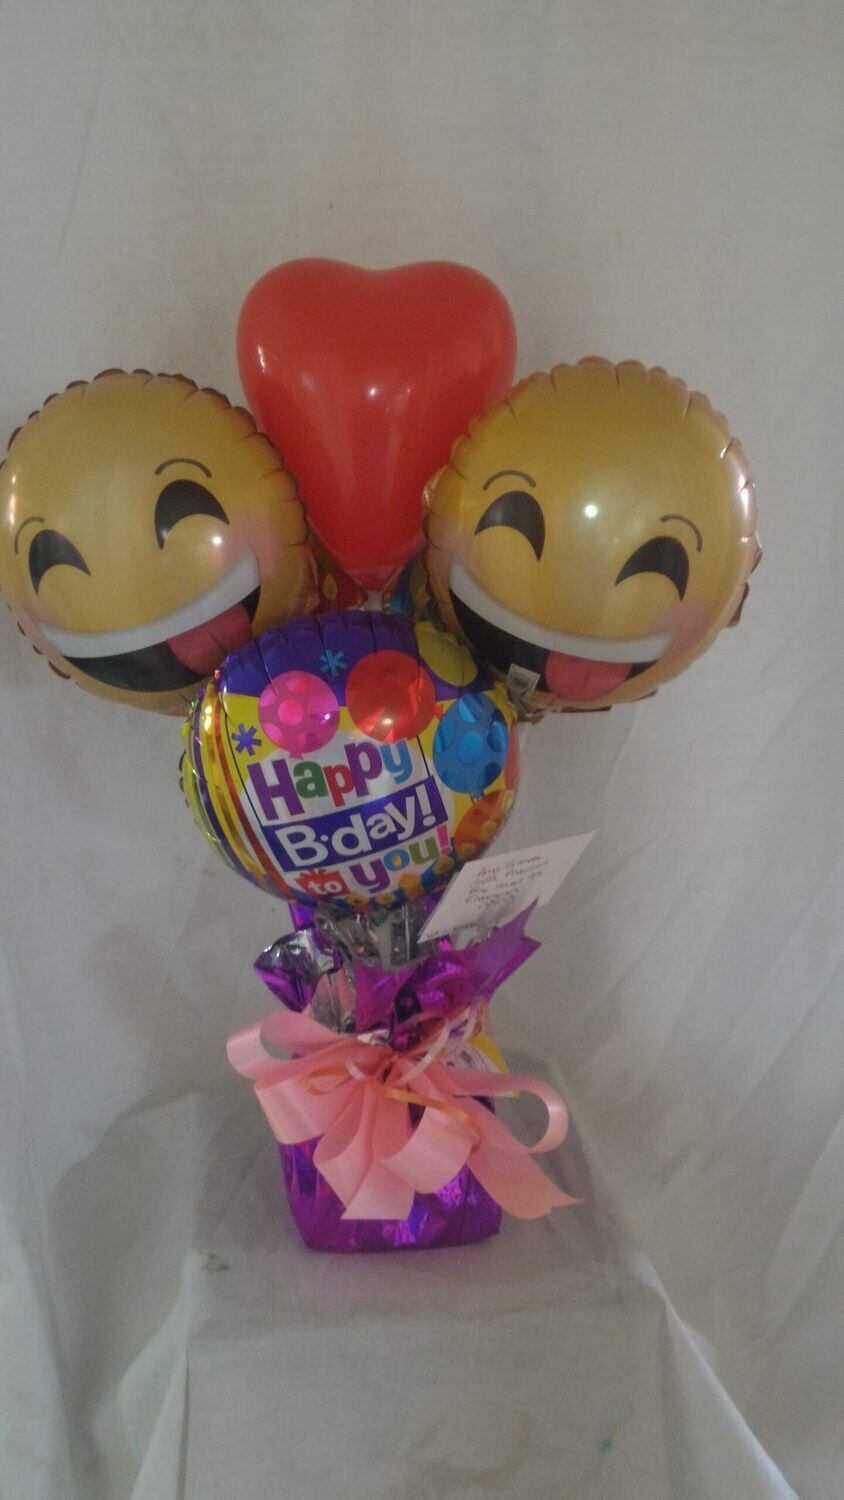 Happy balloon arrangement